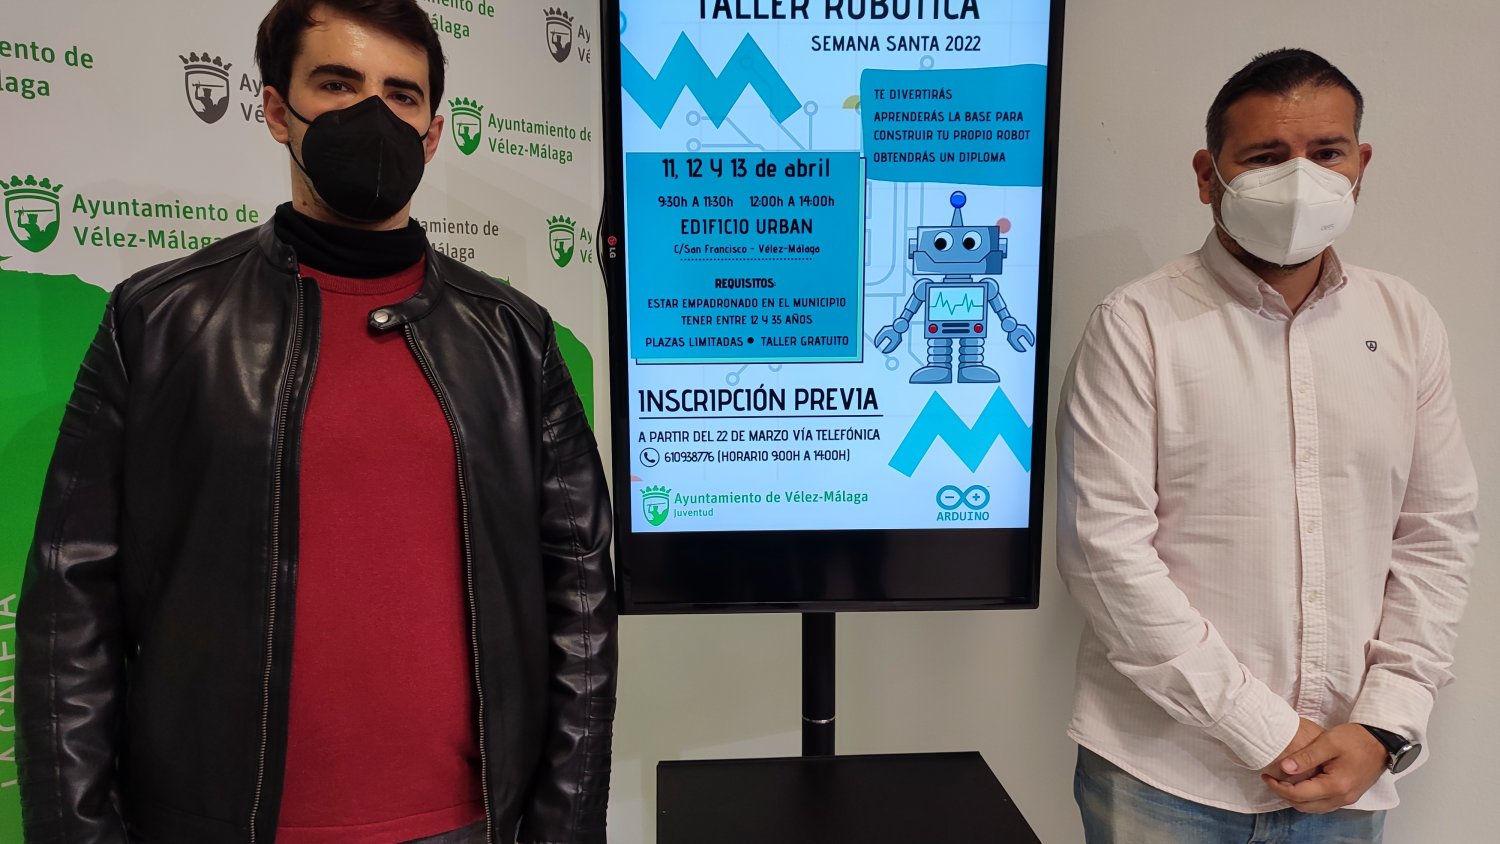 Vélez-Málaga acerca los jóvenes a la robótica con un taller de iniciación gratuito